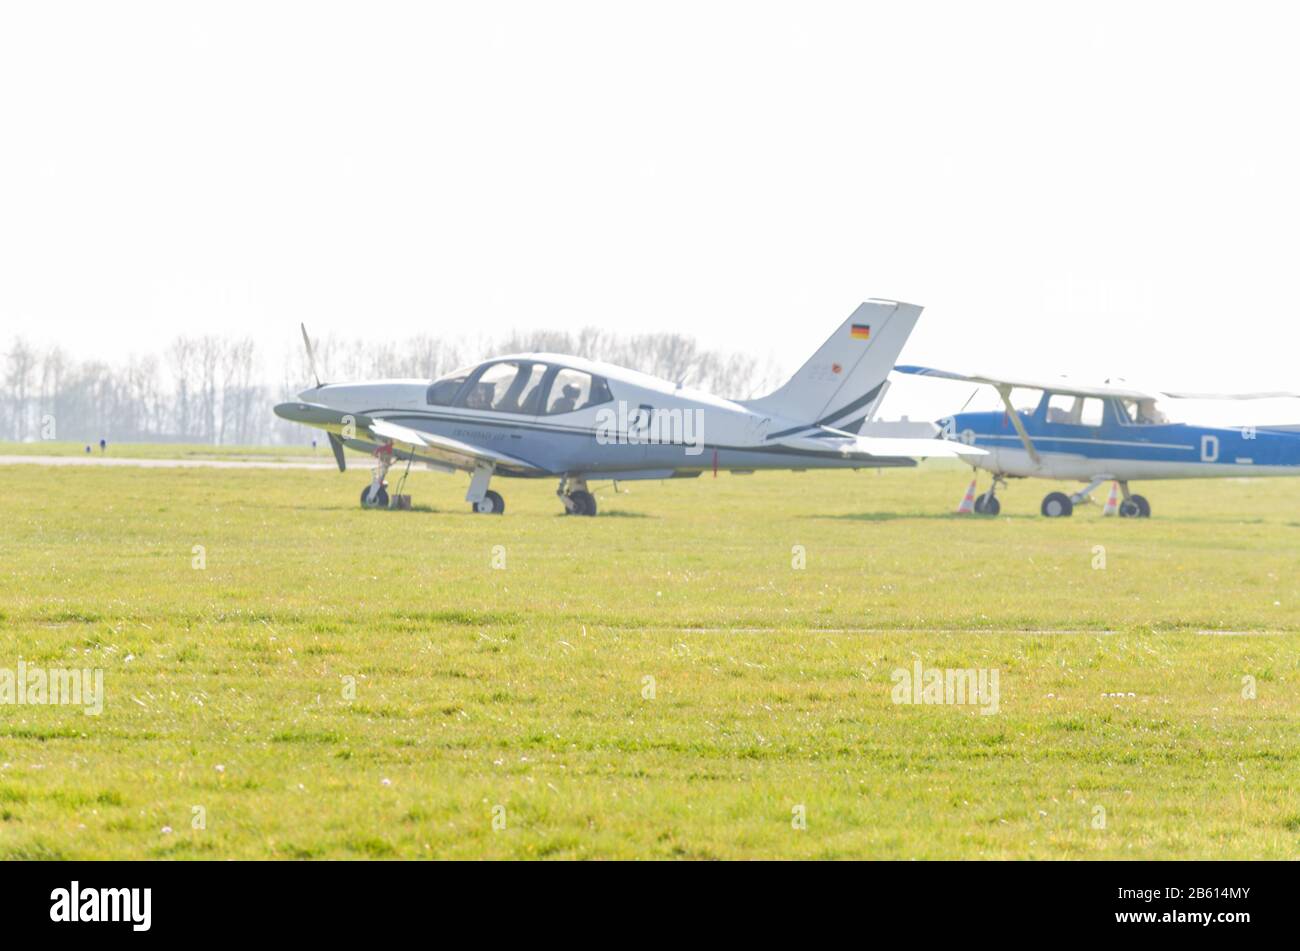 Mühlheim, Nrw, Deutschland - 9. April 2015: Kleines Sportflugzeug beim Start auf dem Flughafen Essen-Mülheim. Stockfoto